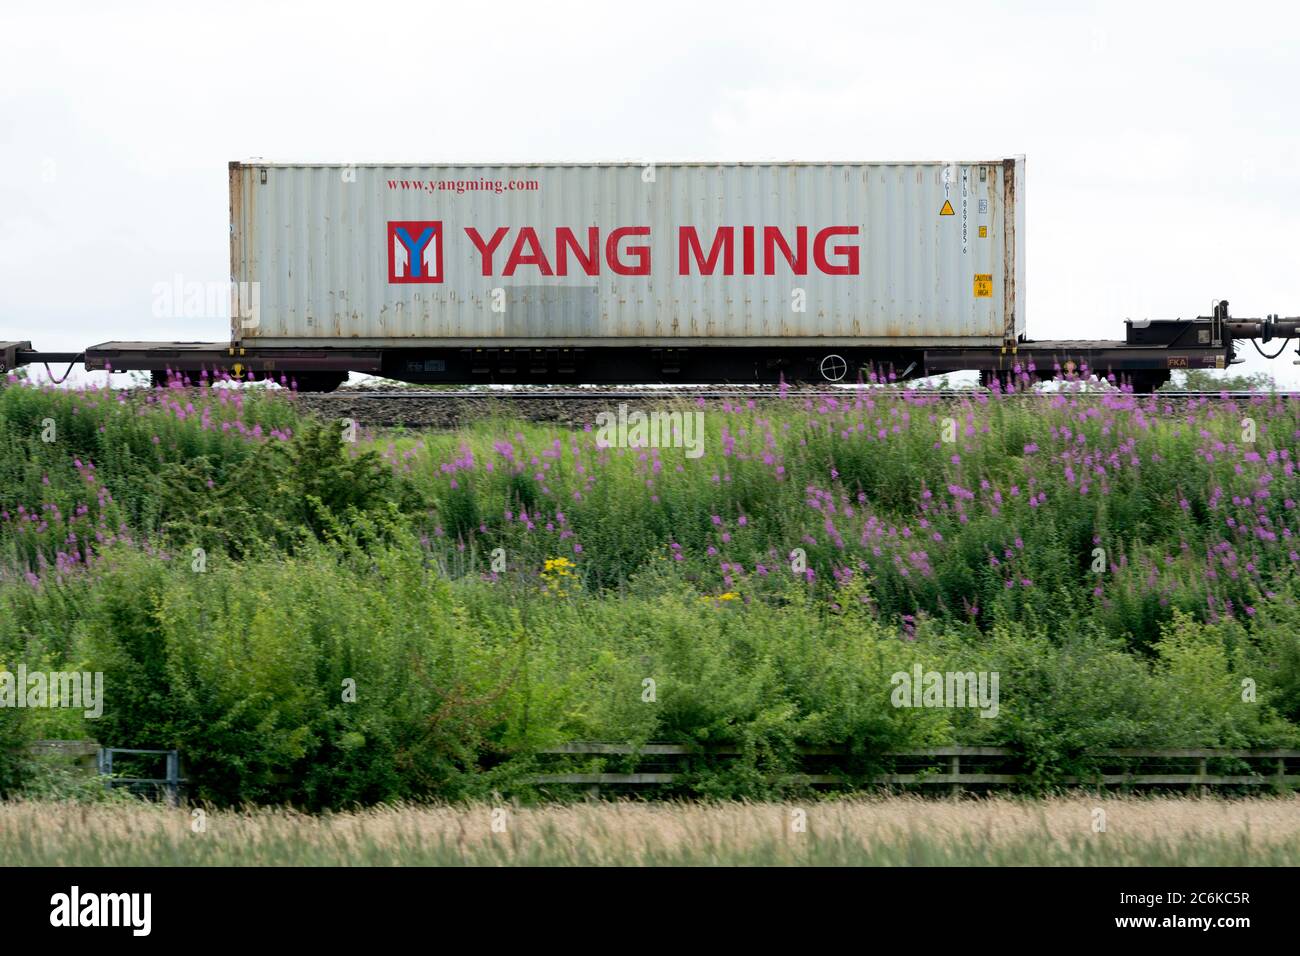 Contenitore per spedizioni Yang Ming su un treno freightliner, Warwickshire, Regno Unito Foto Stock